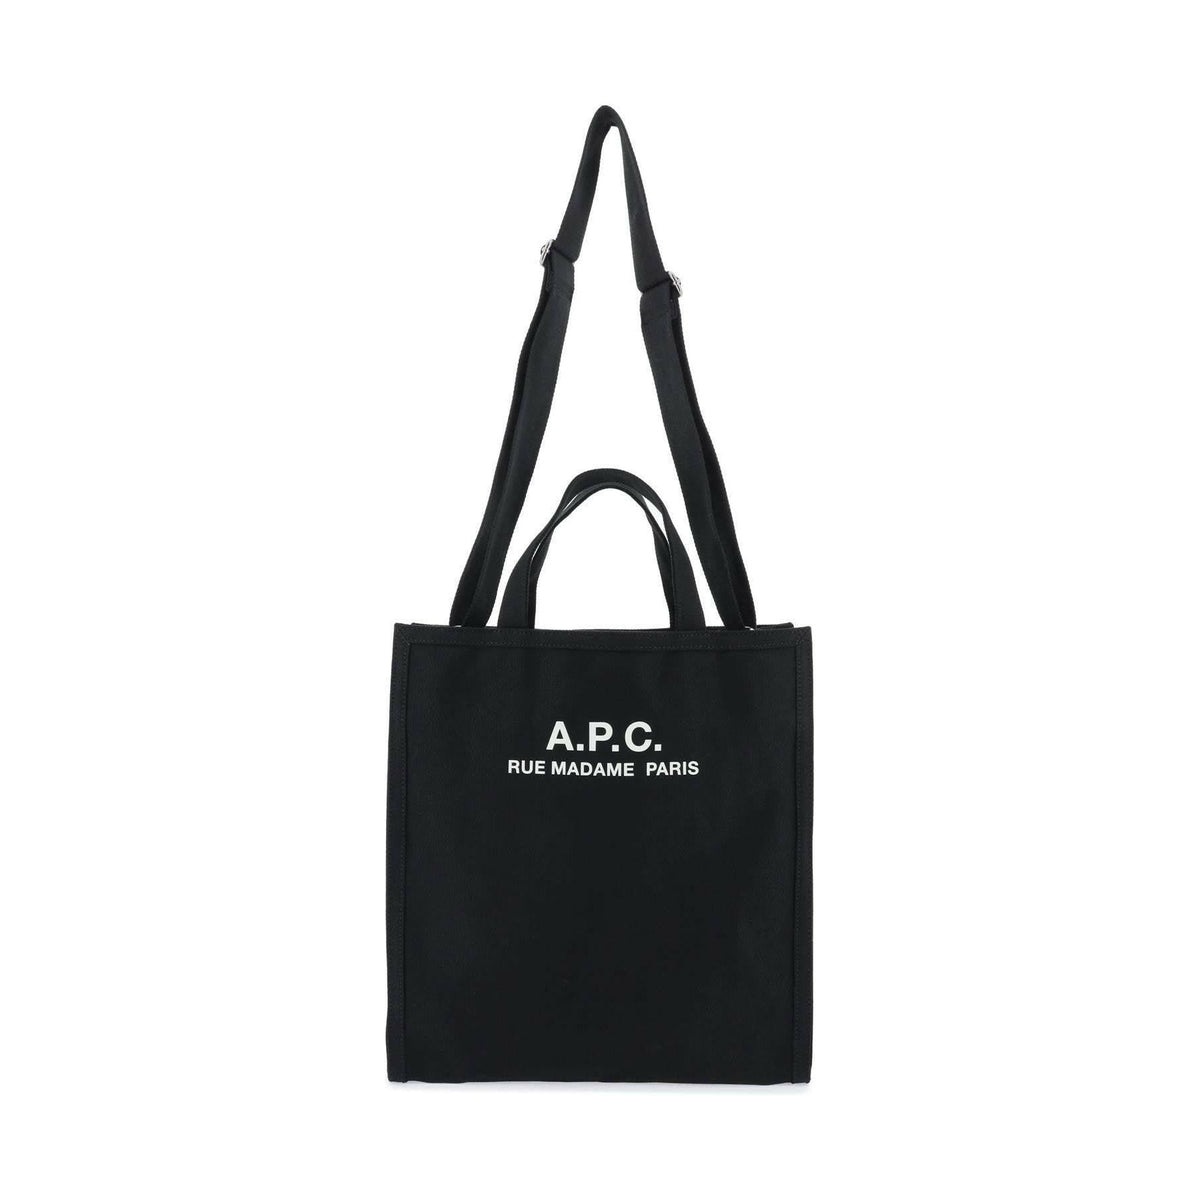 A.P.C. - Black Récupération Canvas Shopping Bag - JOHN JULIA